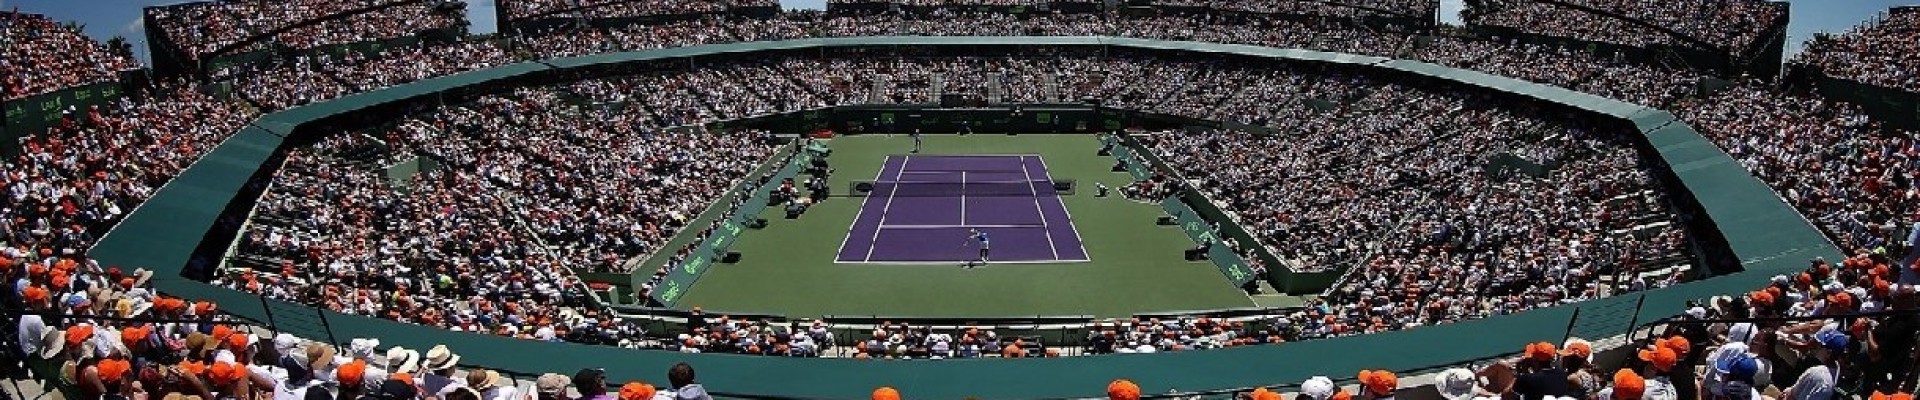 Miami Açık Tenis Biletleri